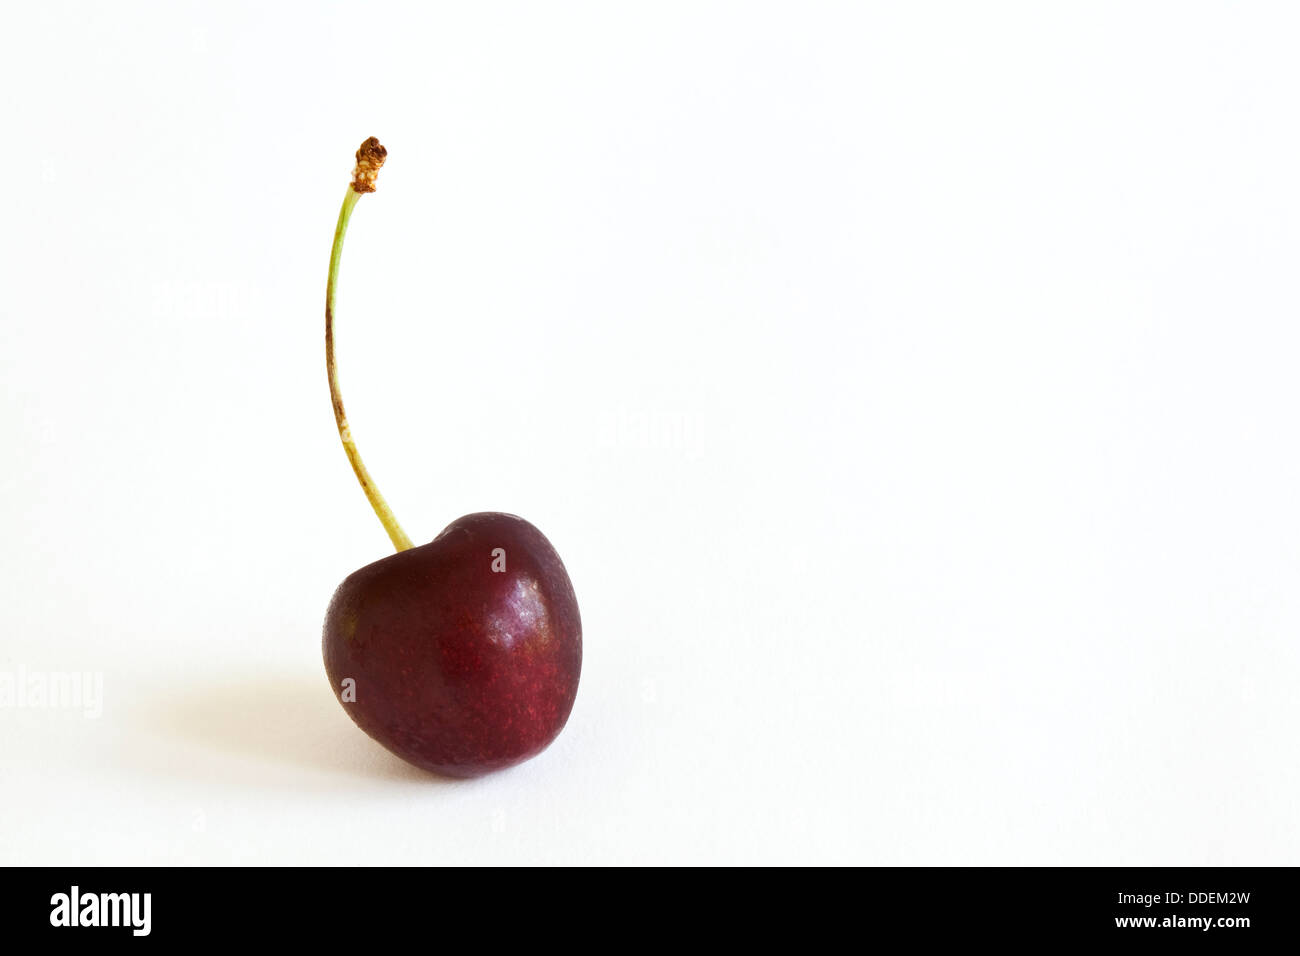 Eine einzige Kirsche Frucht mit einem Stiel vor einem weißen Hintergrund Stockfoto